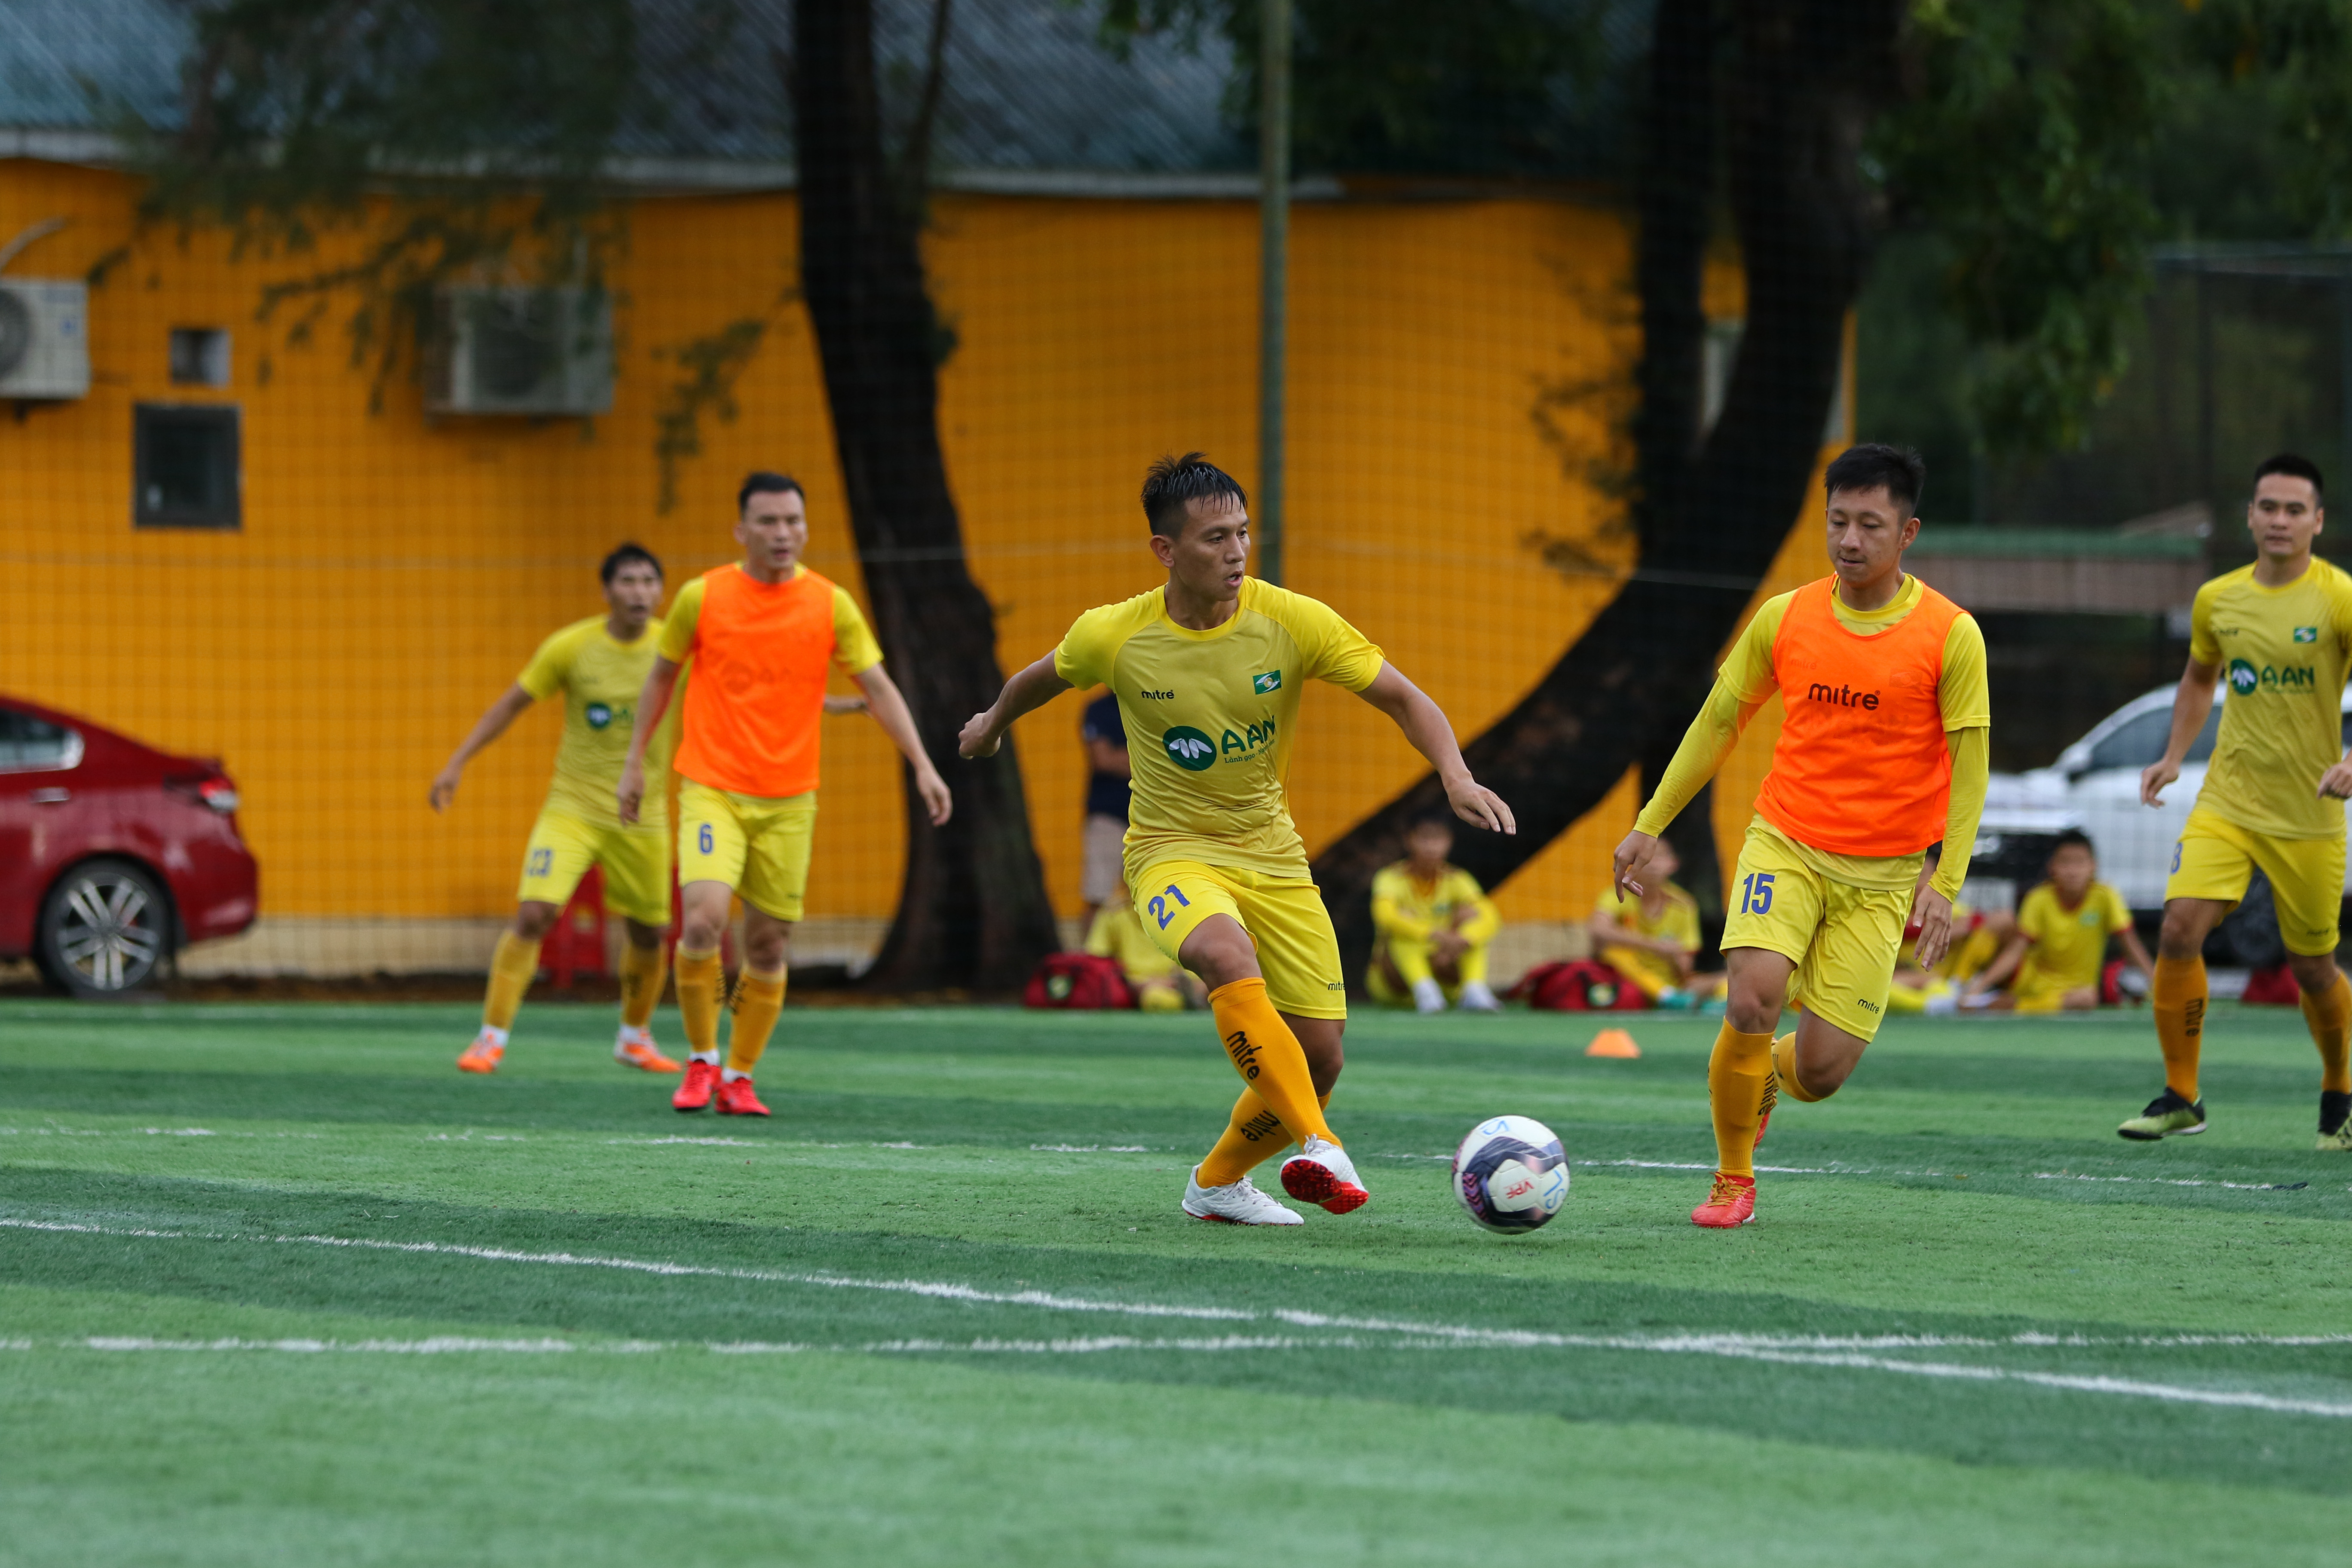 Với kinh nghiệm nhiều năm chơi bóng ở V.League, Đình Hoàng sẽ là cầu thủ quan trọng giúp HLV Huy Hoàng làm mới lối chơi của SLNA trong mùa giải mới. Ảnh: Đức Anh